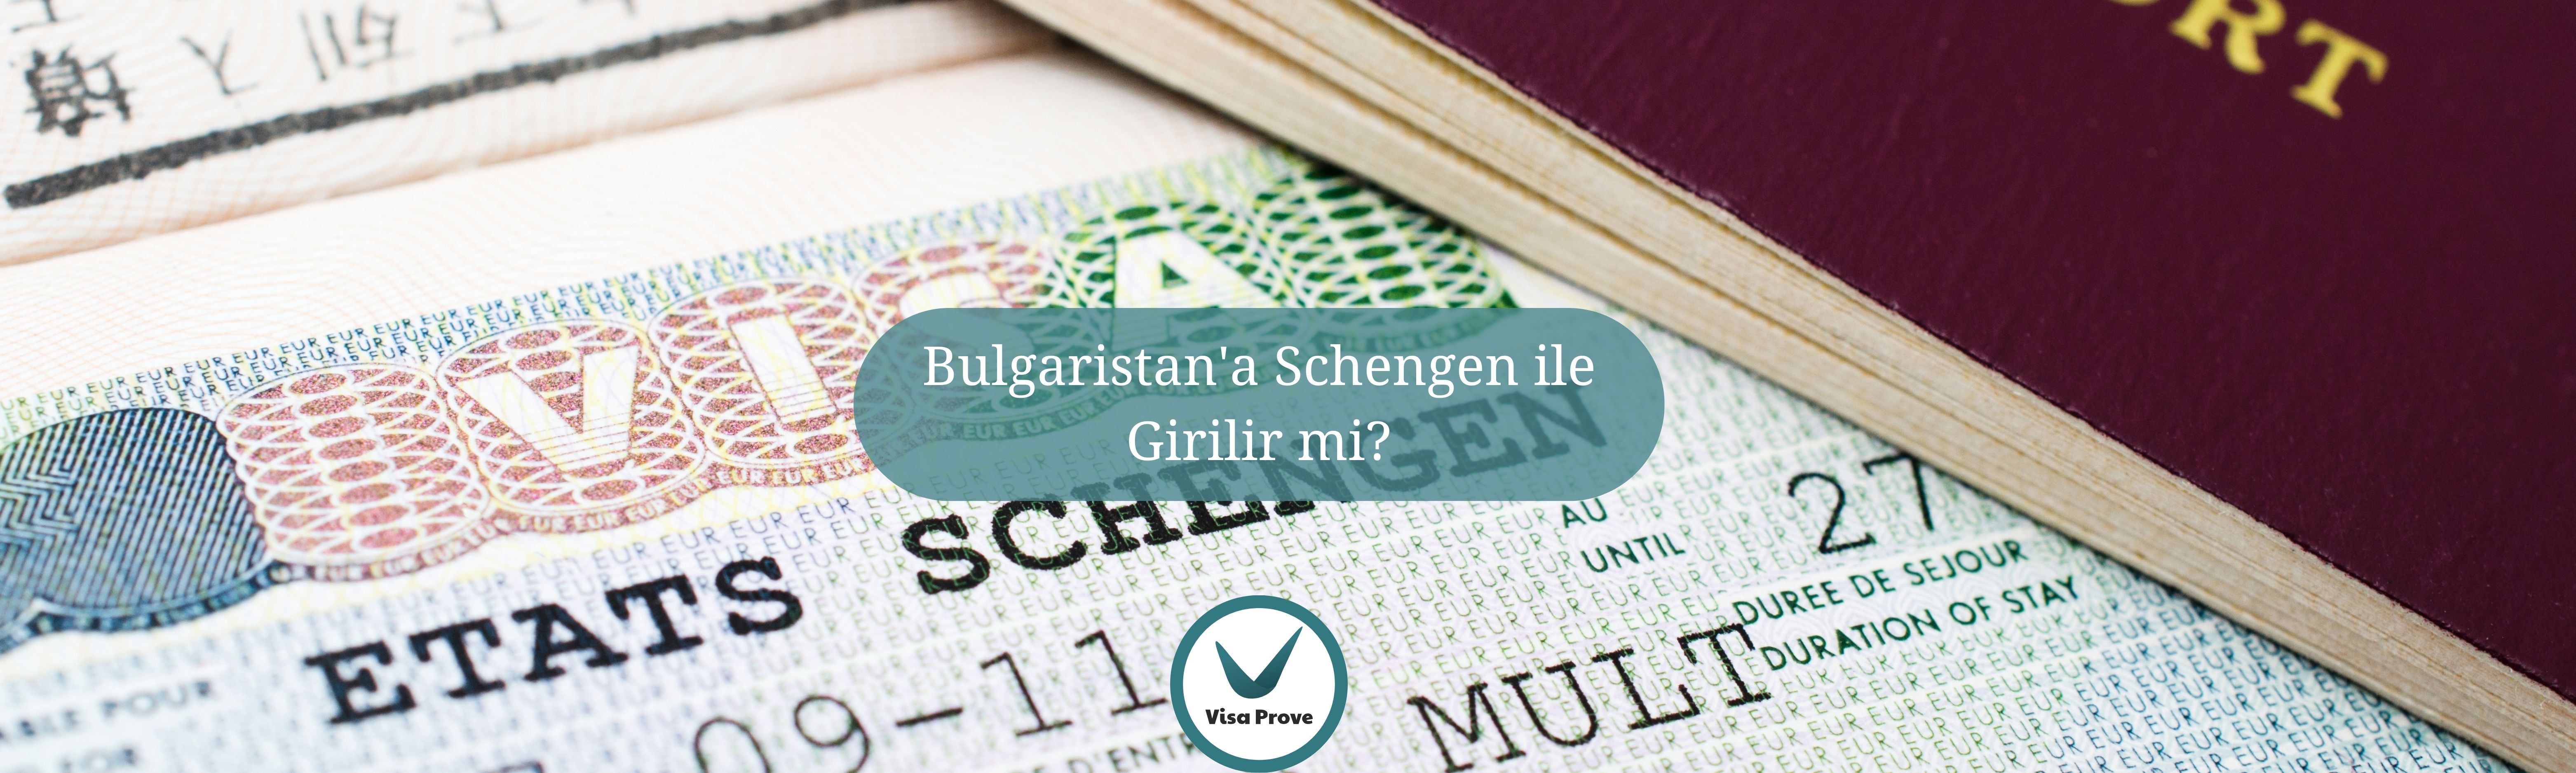 Bulgaristan’a Schengen ile Giriş